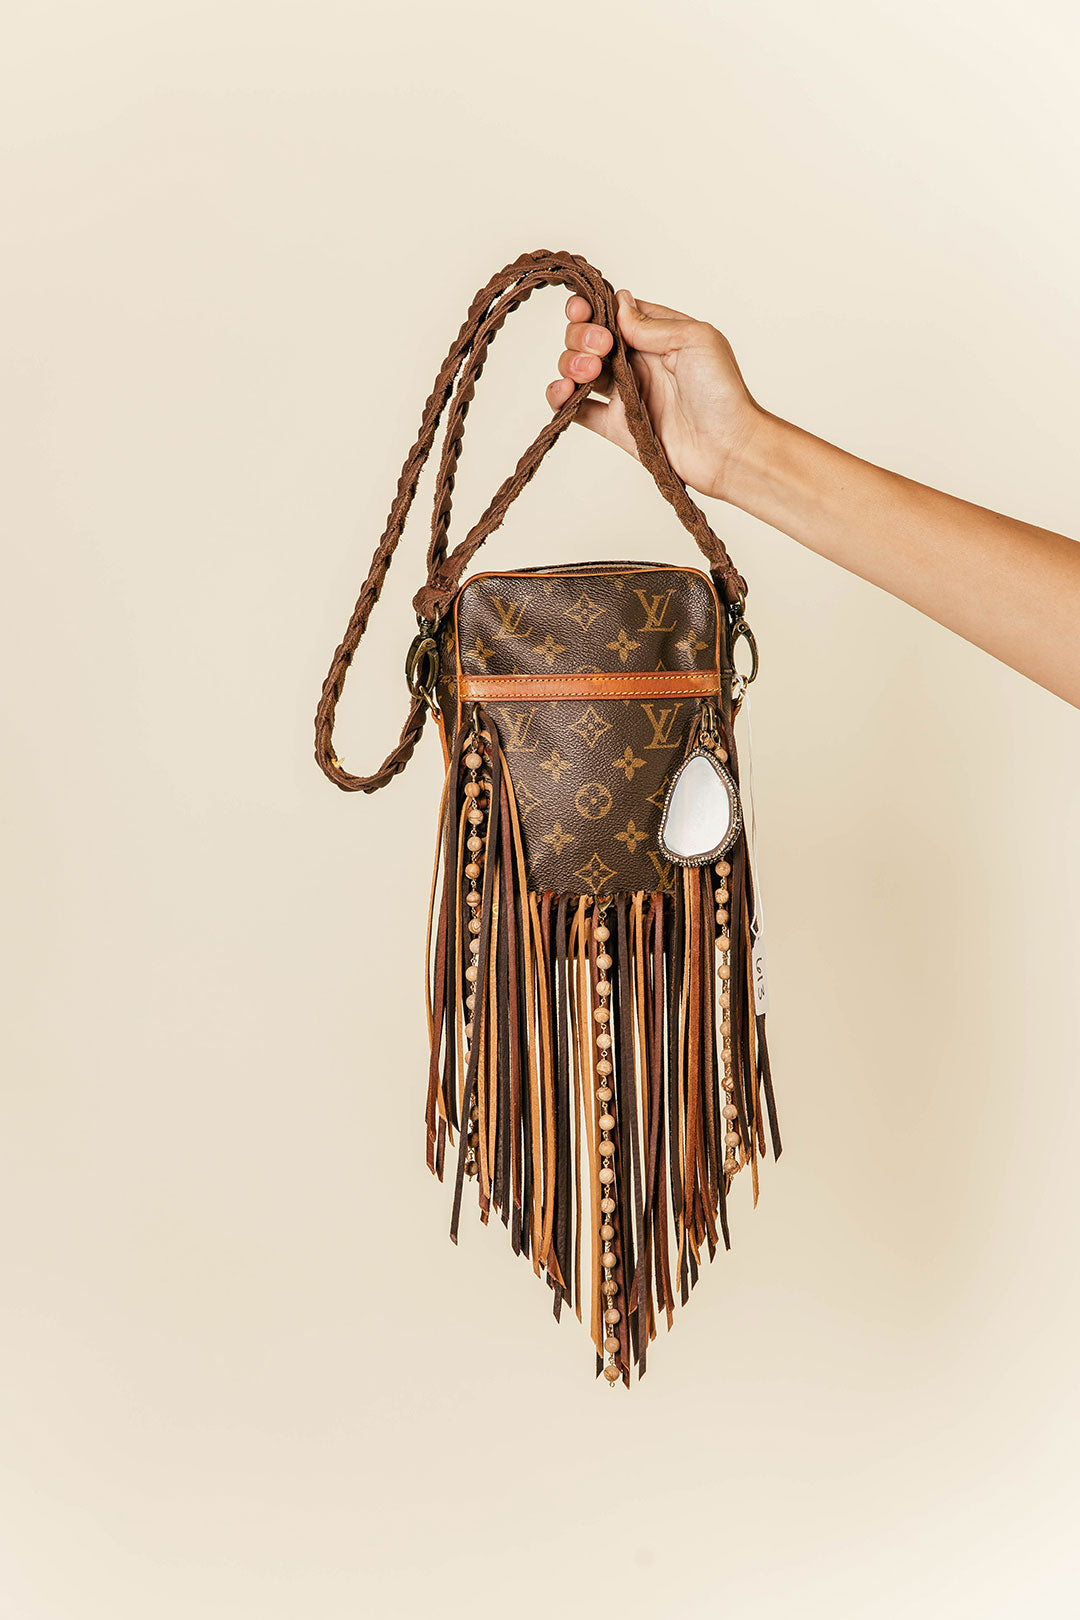 Spring Flash Sale Bag #1060 – Vintage Boho Bags